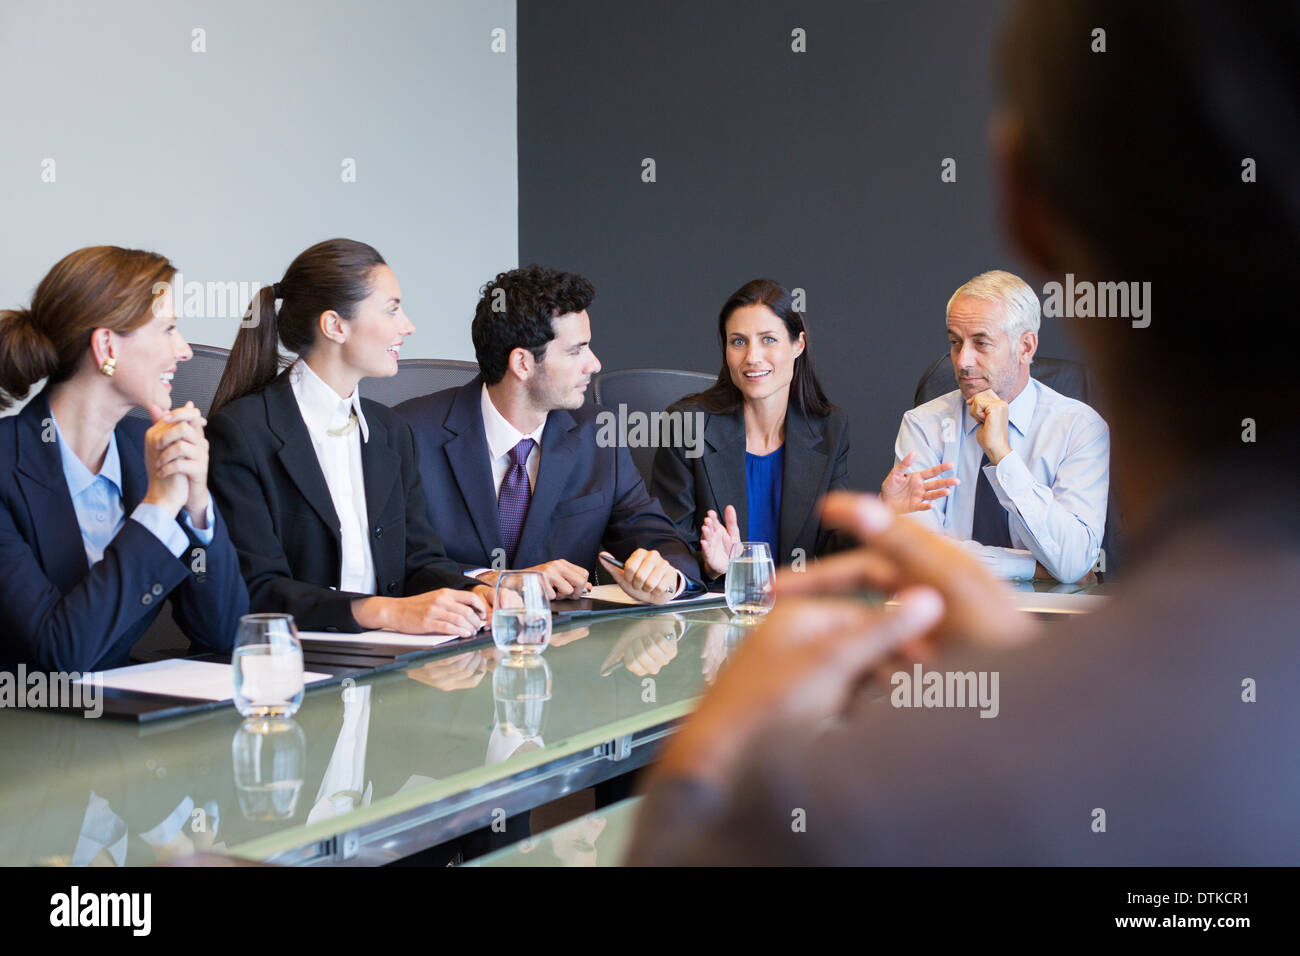 La gente habla en reunión de negocios Foto de stock